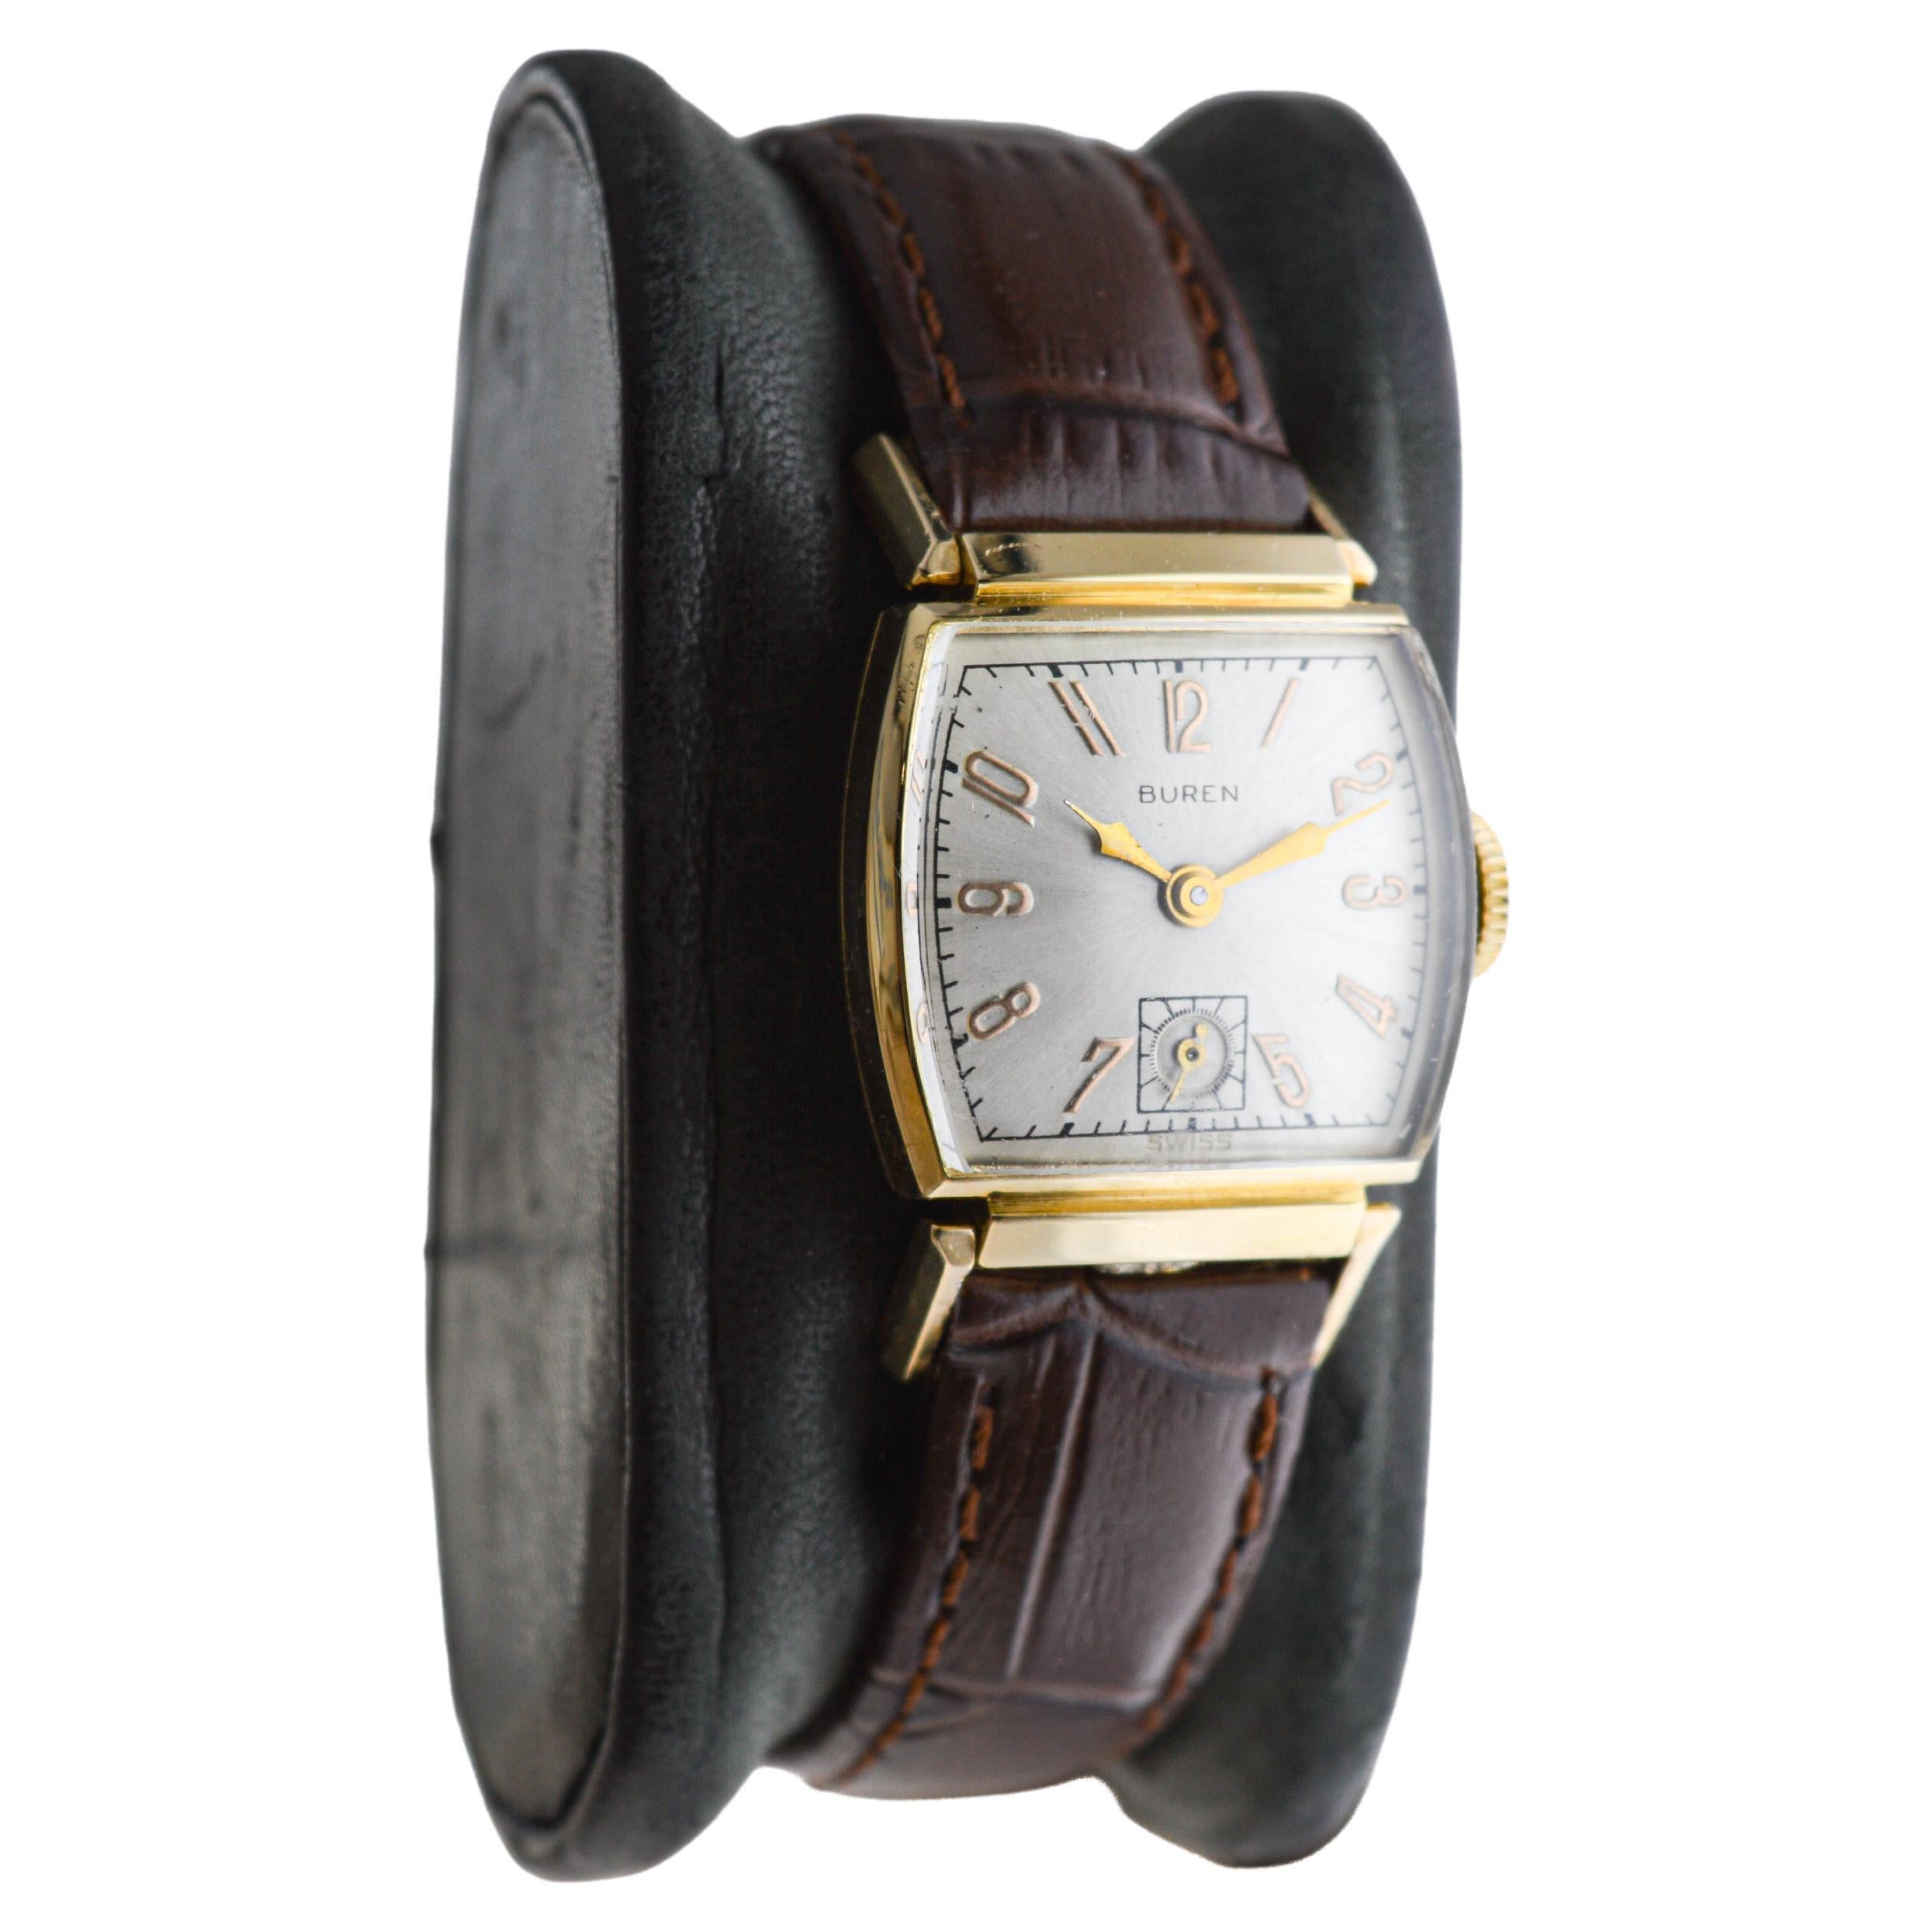 FABRIK / HAUS: Buren Watch Company
STIL / REFERENZ: Art Deco
METALL / MATERIAL: 14Kt Gold gefüllt
CIRCA / JAHR: 1940er Jahre
ABMESSUNGEN / GRÖSSE: 42 mm Länge und 23 mm Durchmesser
UHRWERK / KALIBER: Handaufzug / 17 Jewels / Kaliber 
ZIFFERBLATT /